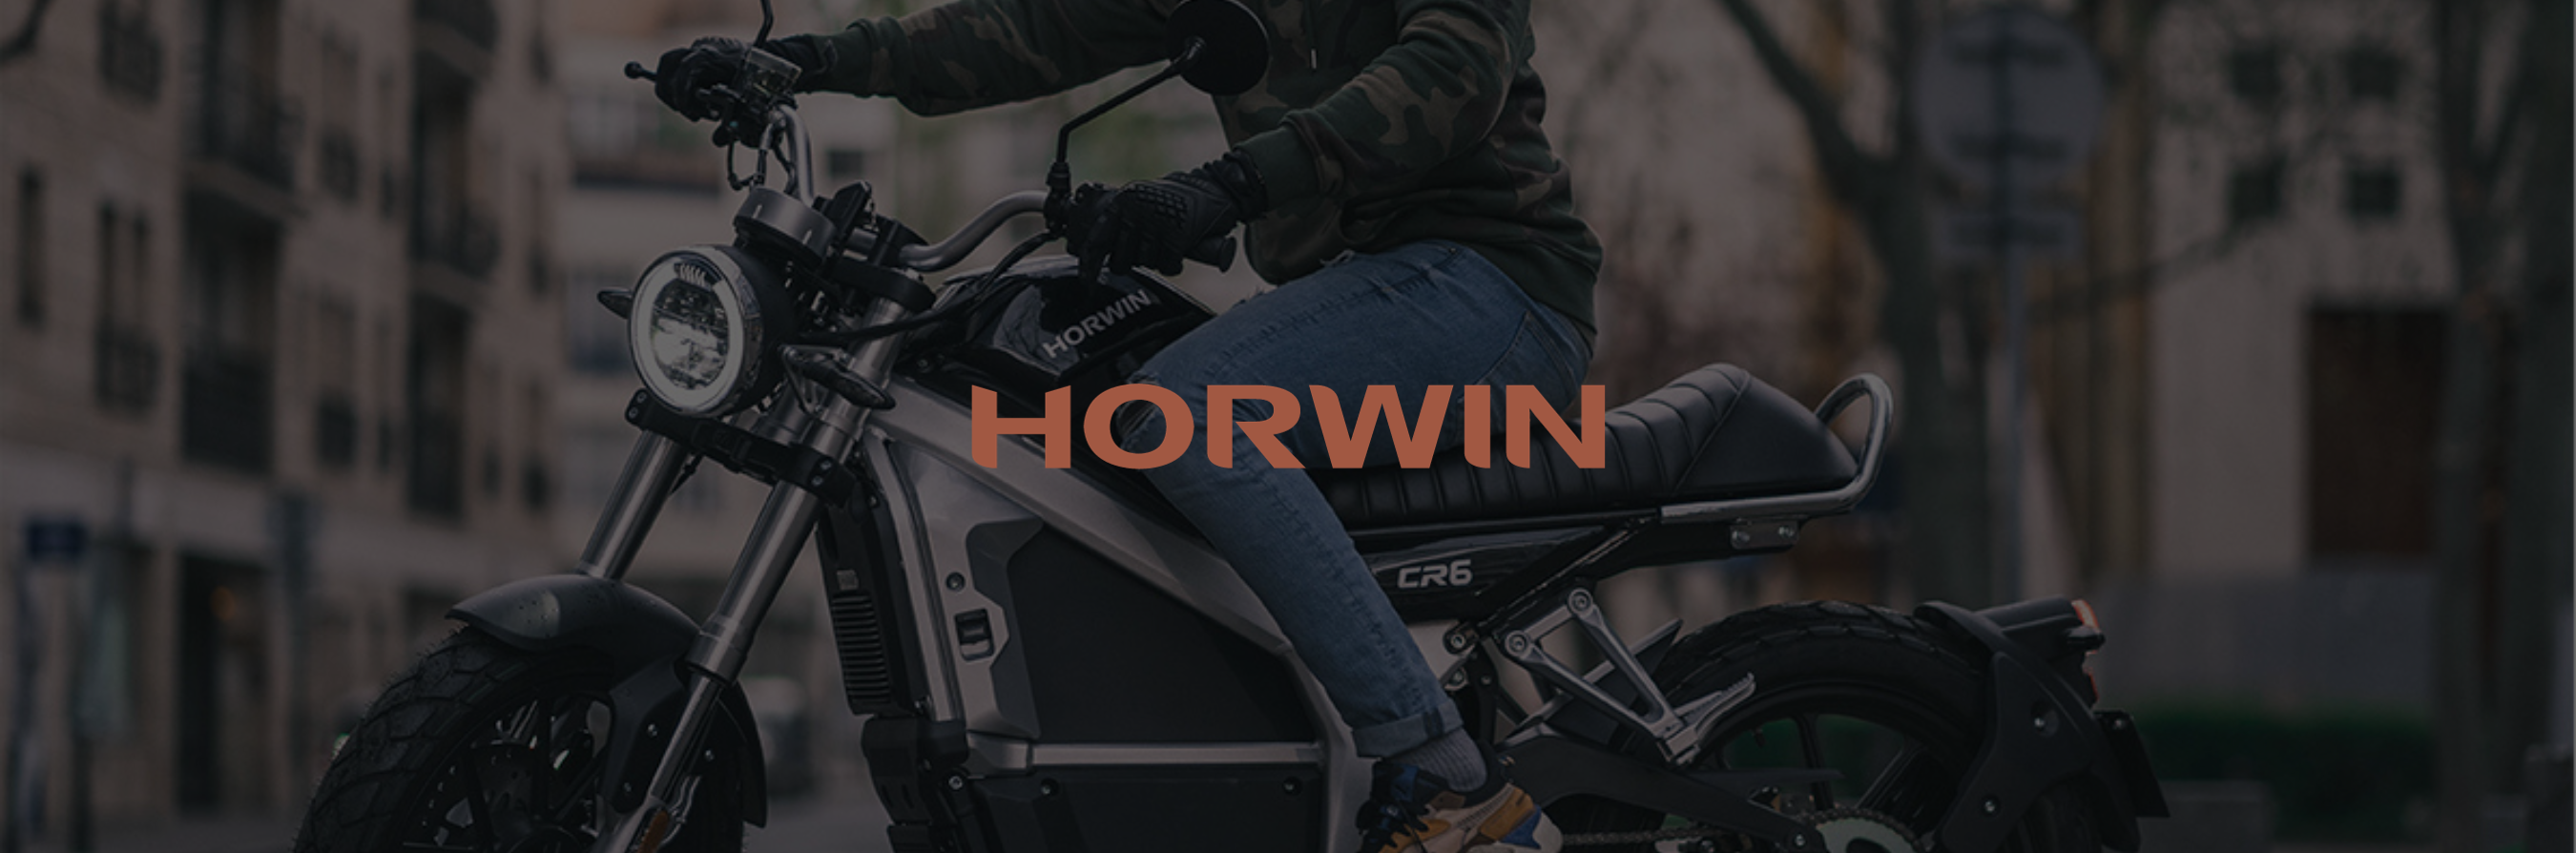 Horwin - Motos